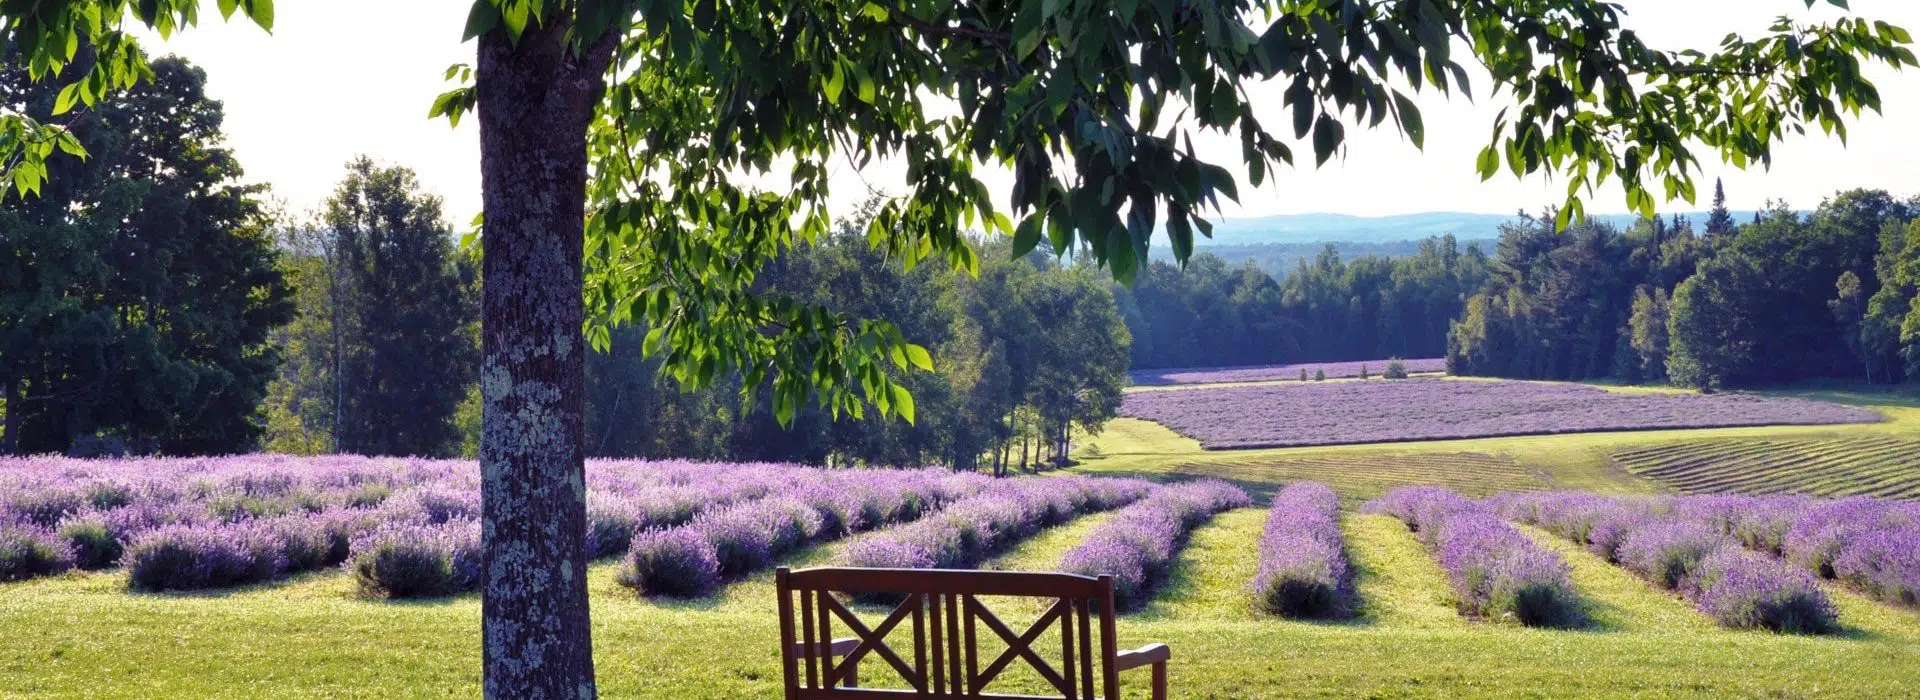 rows of lavender at the bleu lavande lavender farm Canada near Rabbit Hill Inn